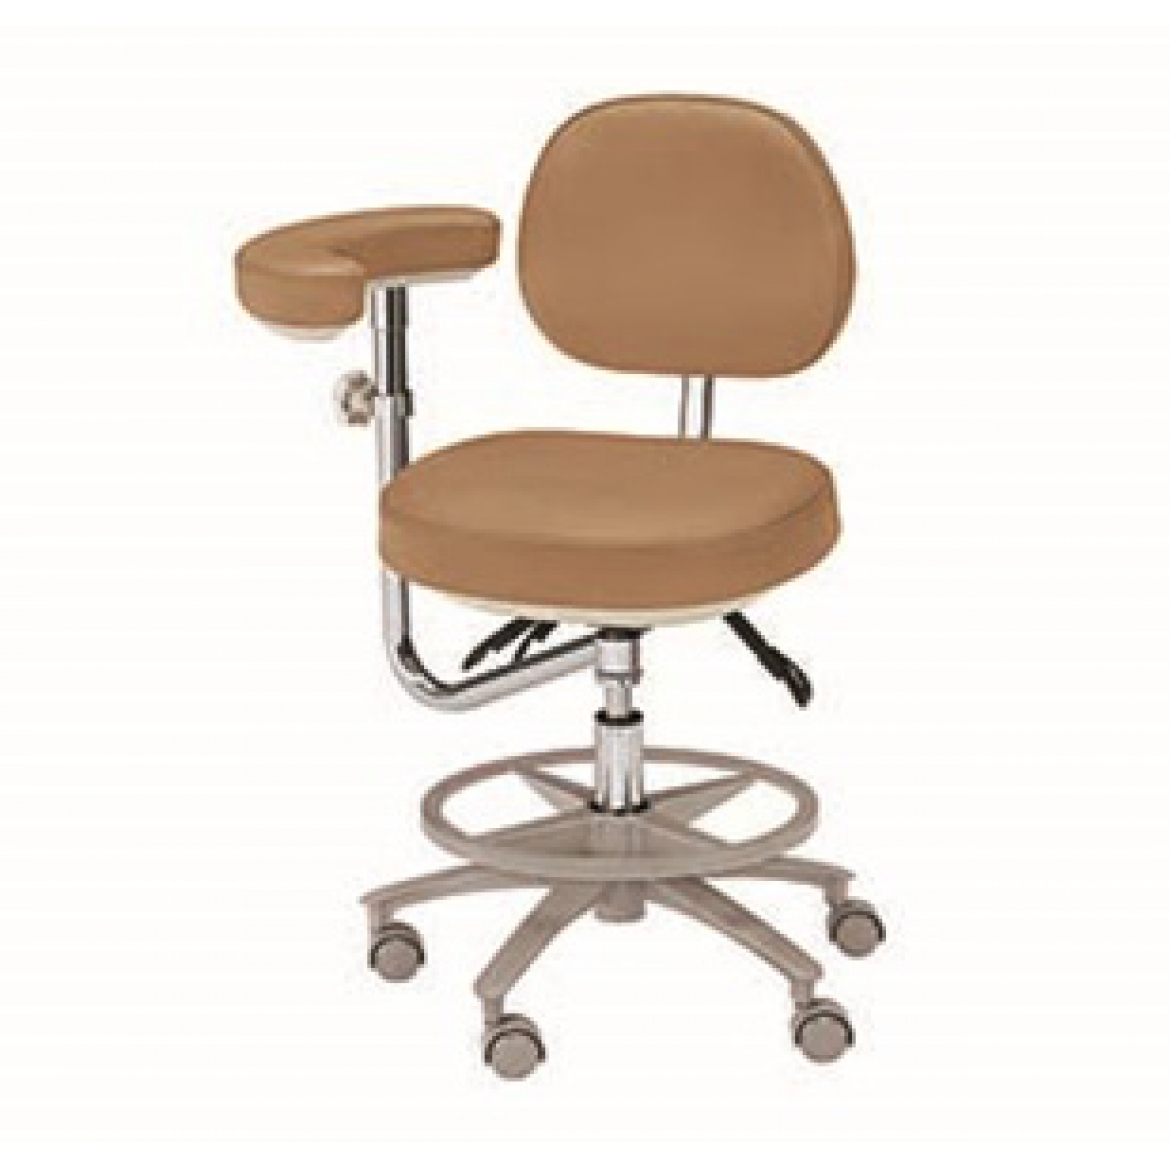 Стоматологические стулья серии HS-8 Искусственная кожа.